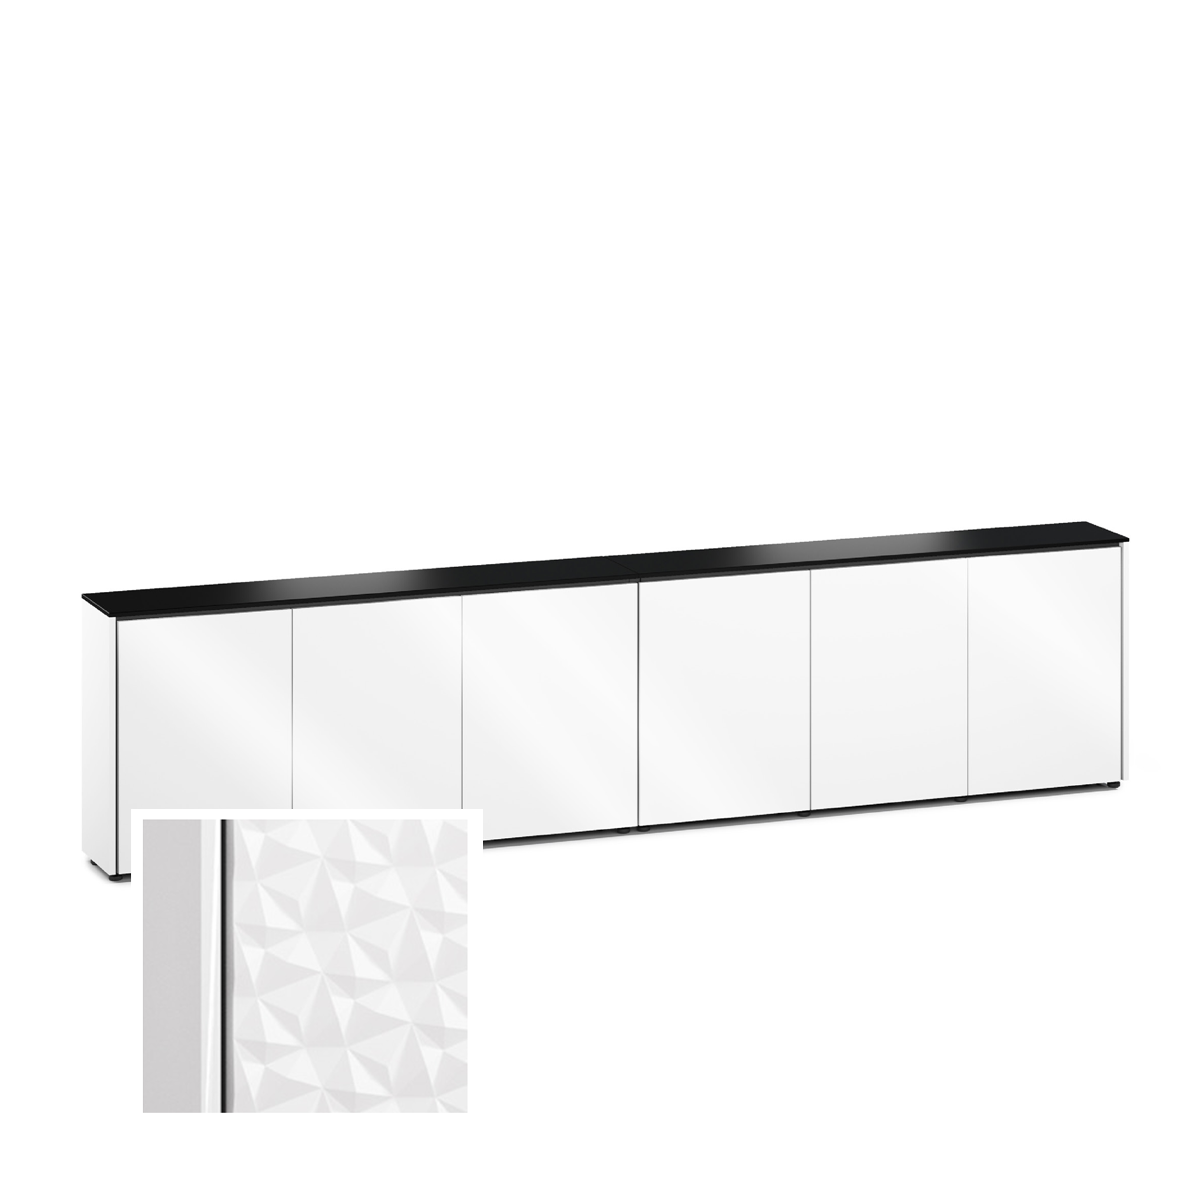 D1/367A/ML/WH/BK 6 Bay Low-Profile, Wall Cabinet, Milan- White / Black Phenolic